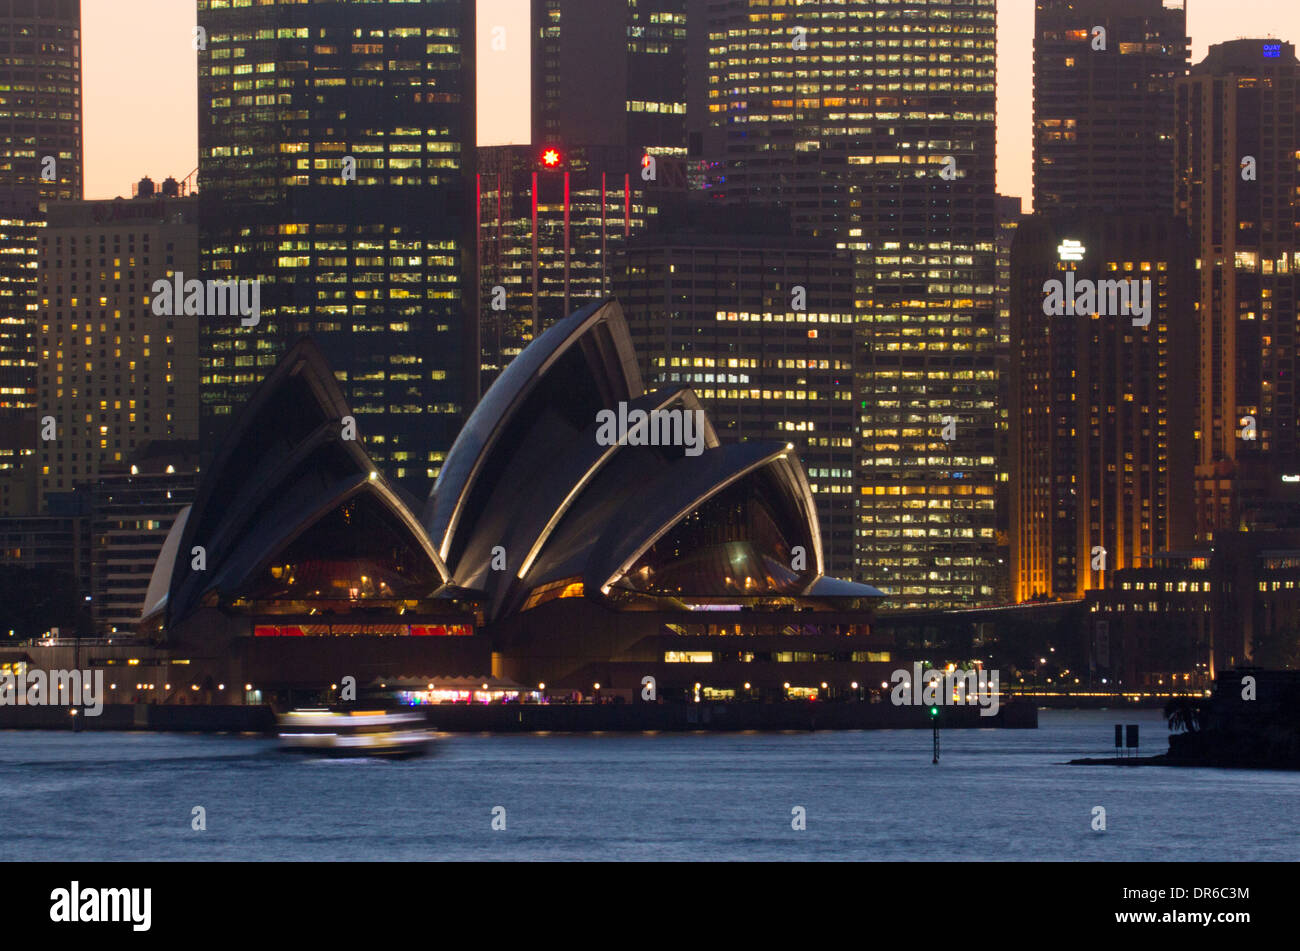 Opéra de Sydney et les toits de CBD au coucher du soleil nuit de Cremorne Point Sydney NSW Australie Nouvelle Galles du Sud Banque D'Images